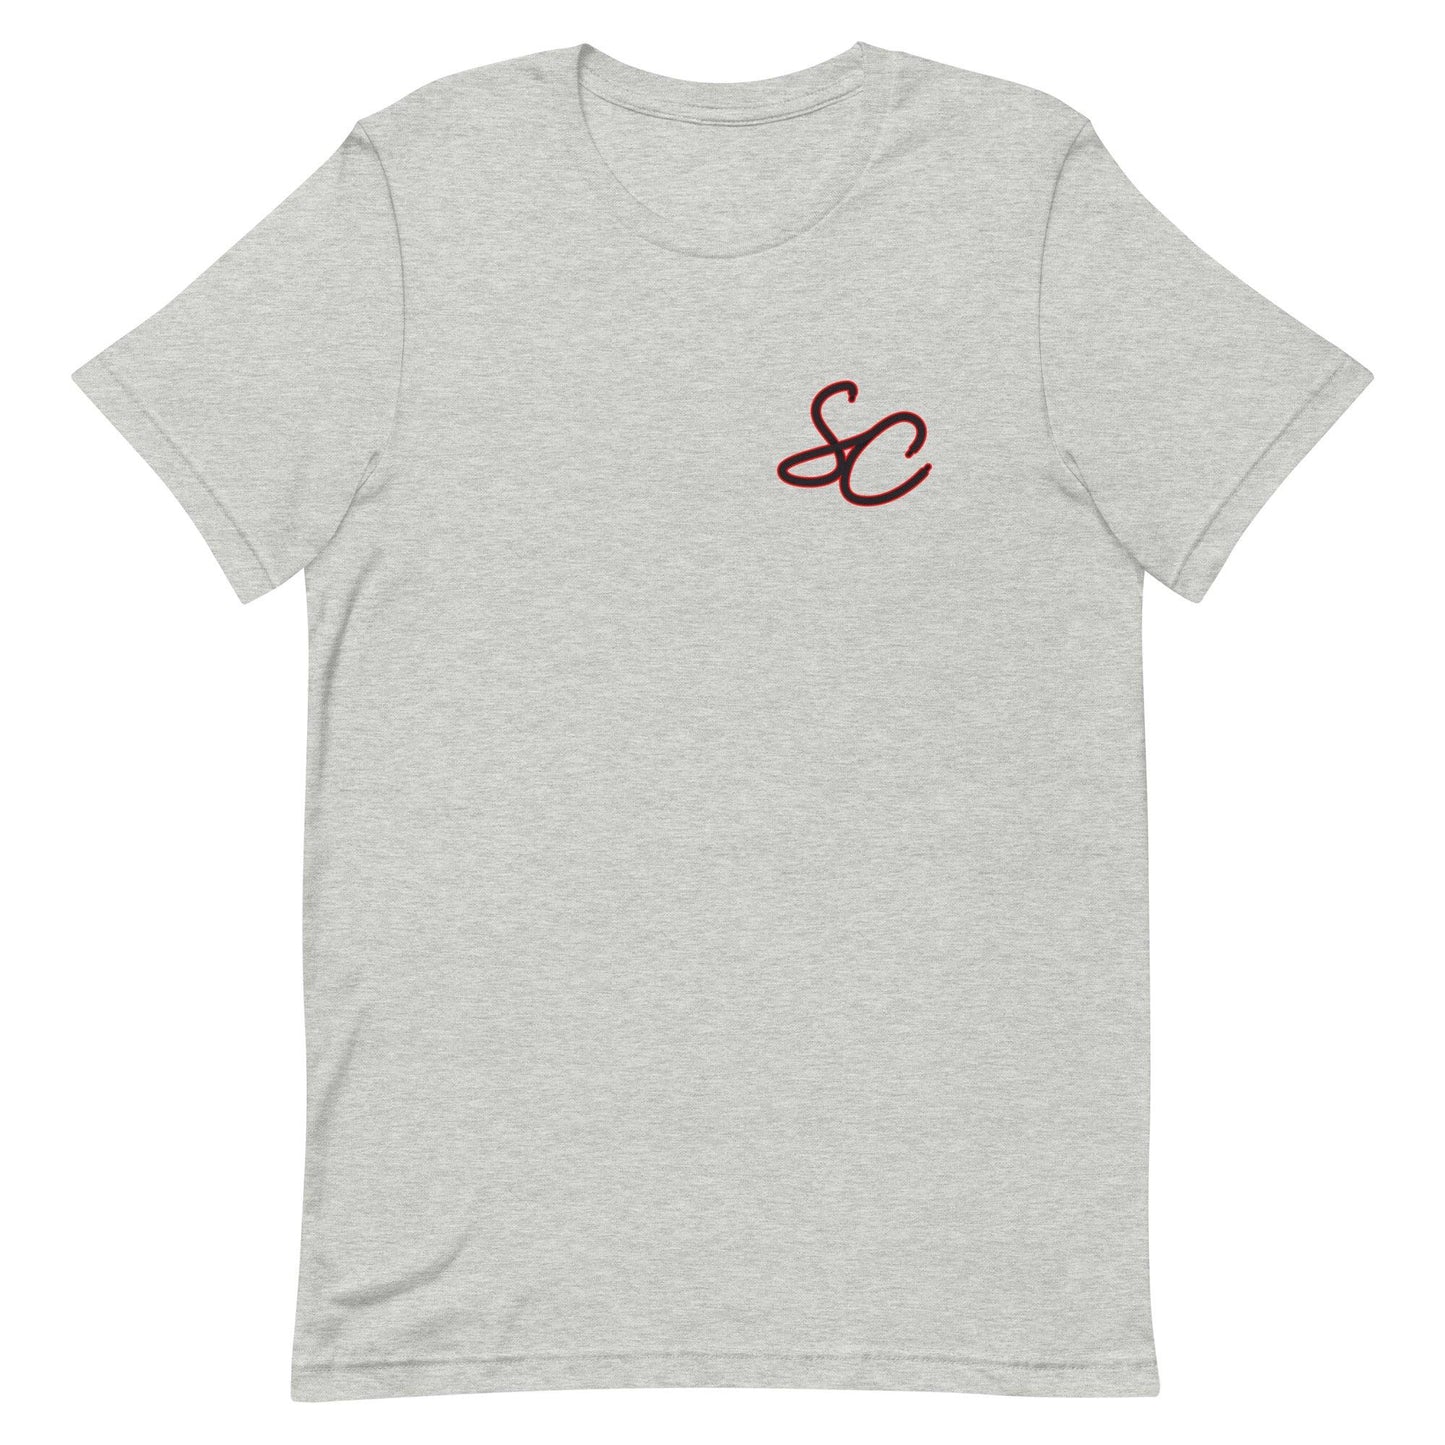 Simmie Cobbs "Essential" t-shirt - Fan Arch